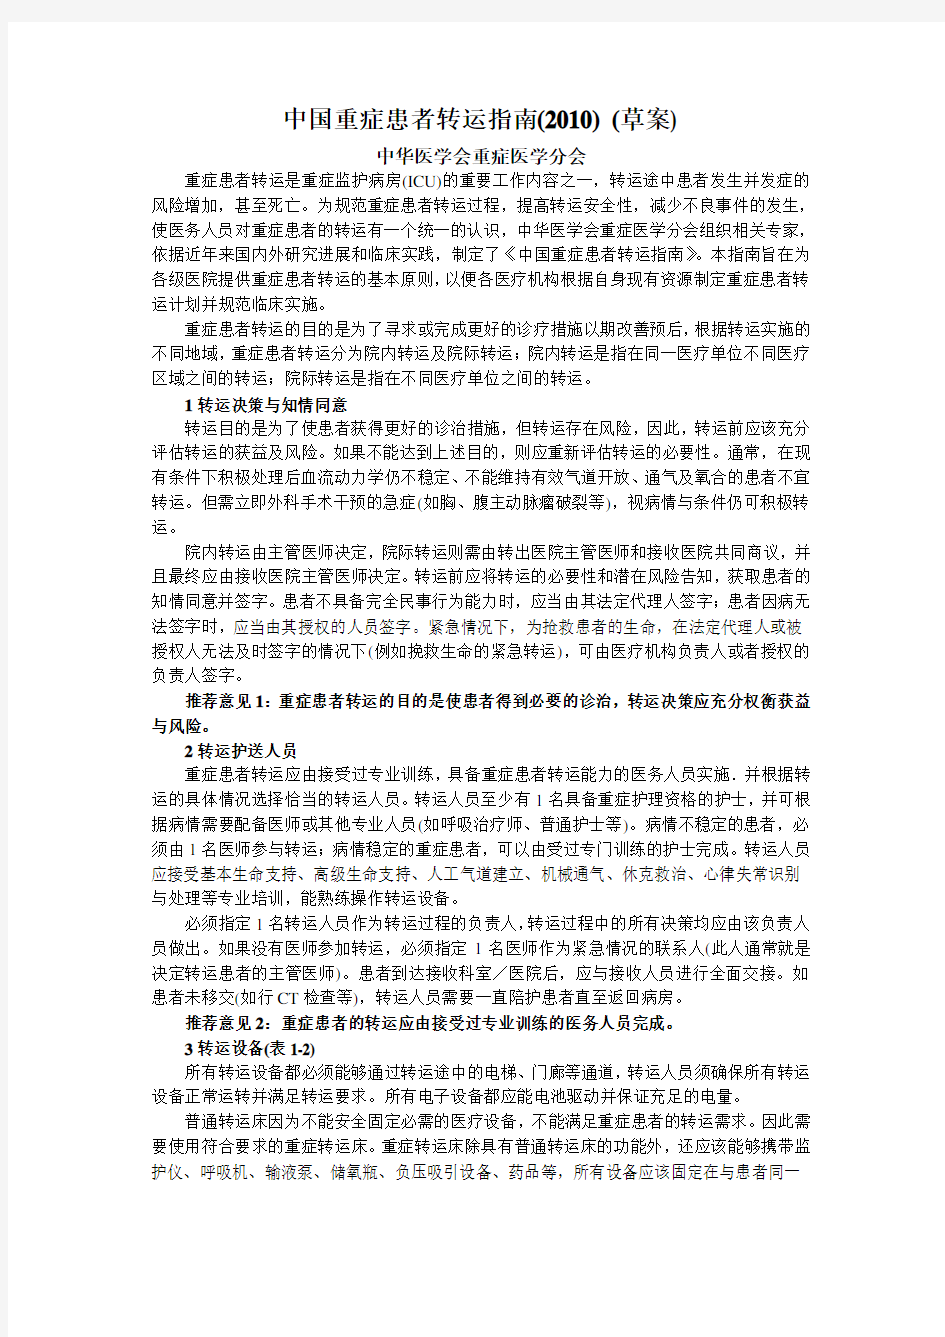 中国重症患者转运指南(2010)_(草案)